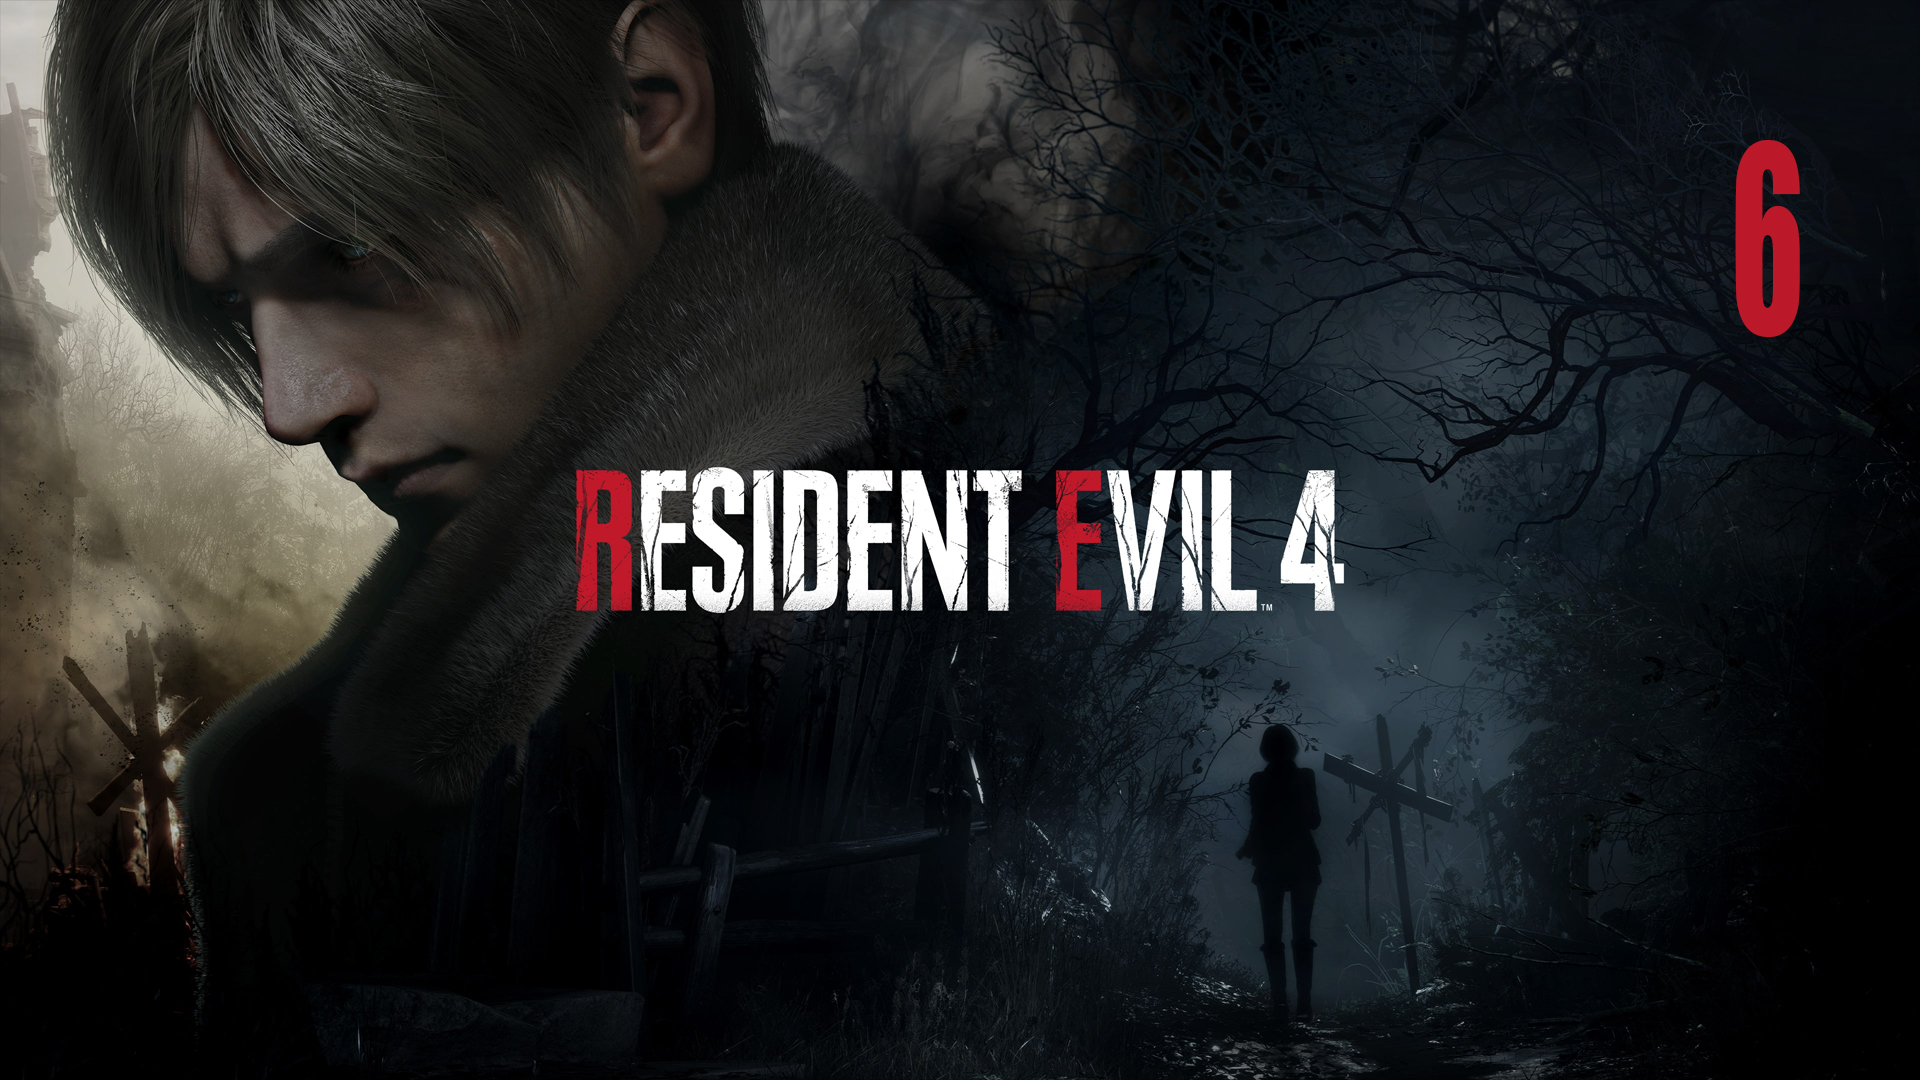 Resident Evil 4 Remake | Прохождение. Часть 6 | PC | Тихий стрим